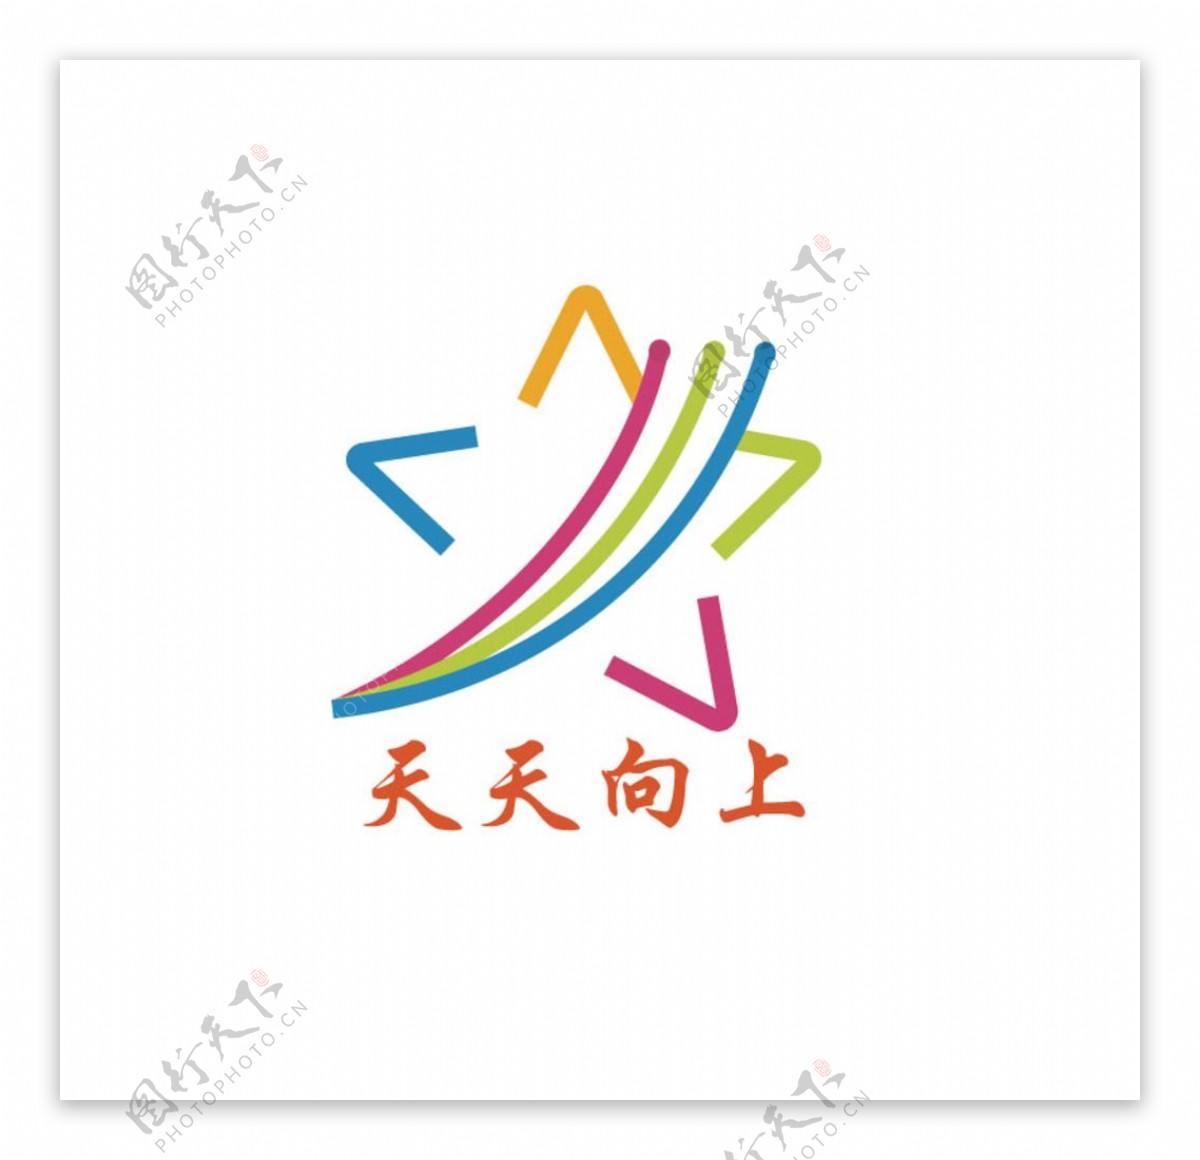 教育类logo